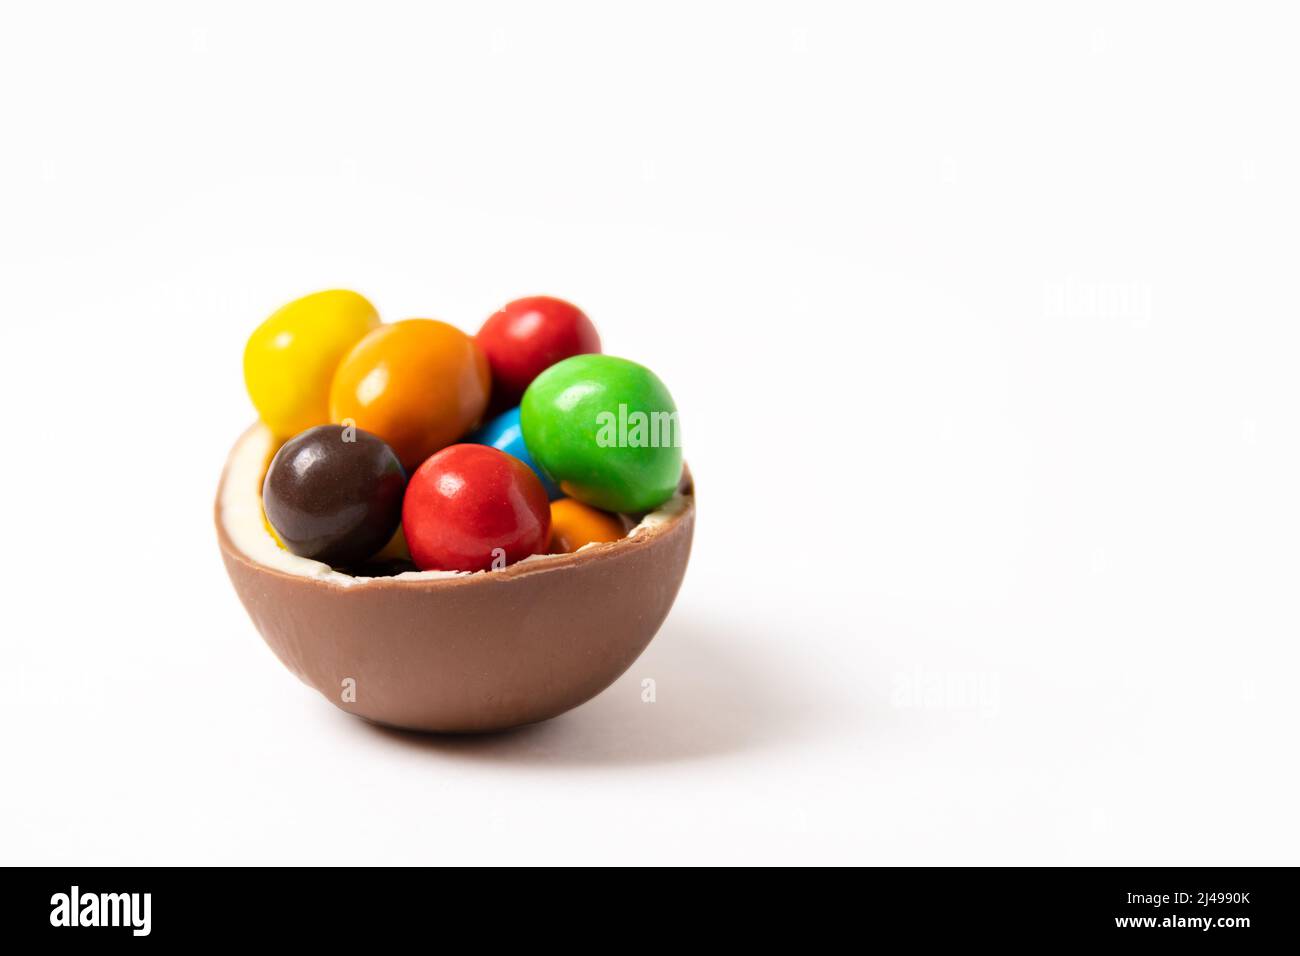 Uovo di pasqua al cioccolato cracked con piccole caramelle colorate rotonde su sfondo bianco, spazio copia, vista laterale. Cioccolatini per bambini. Concetto di Pasqua. Foto Stock